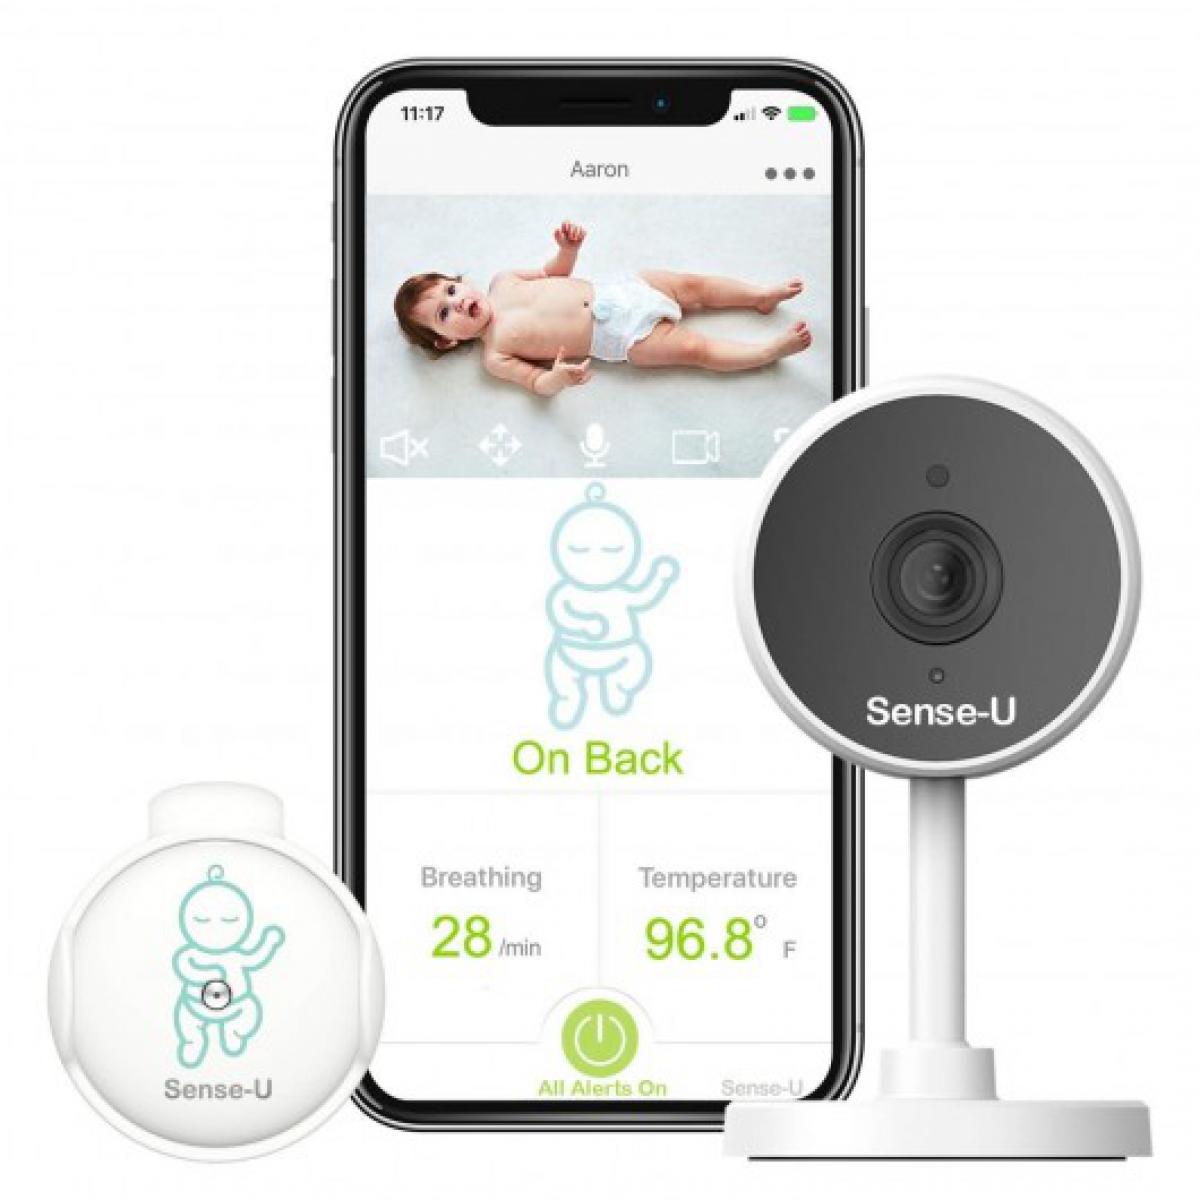 Sense-U - Sense-U Video and Monitor, le système complet pour bébé - Caméra de surveillance connectée